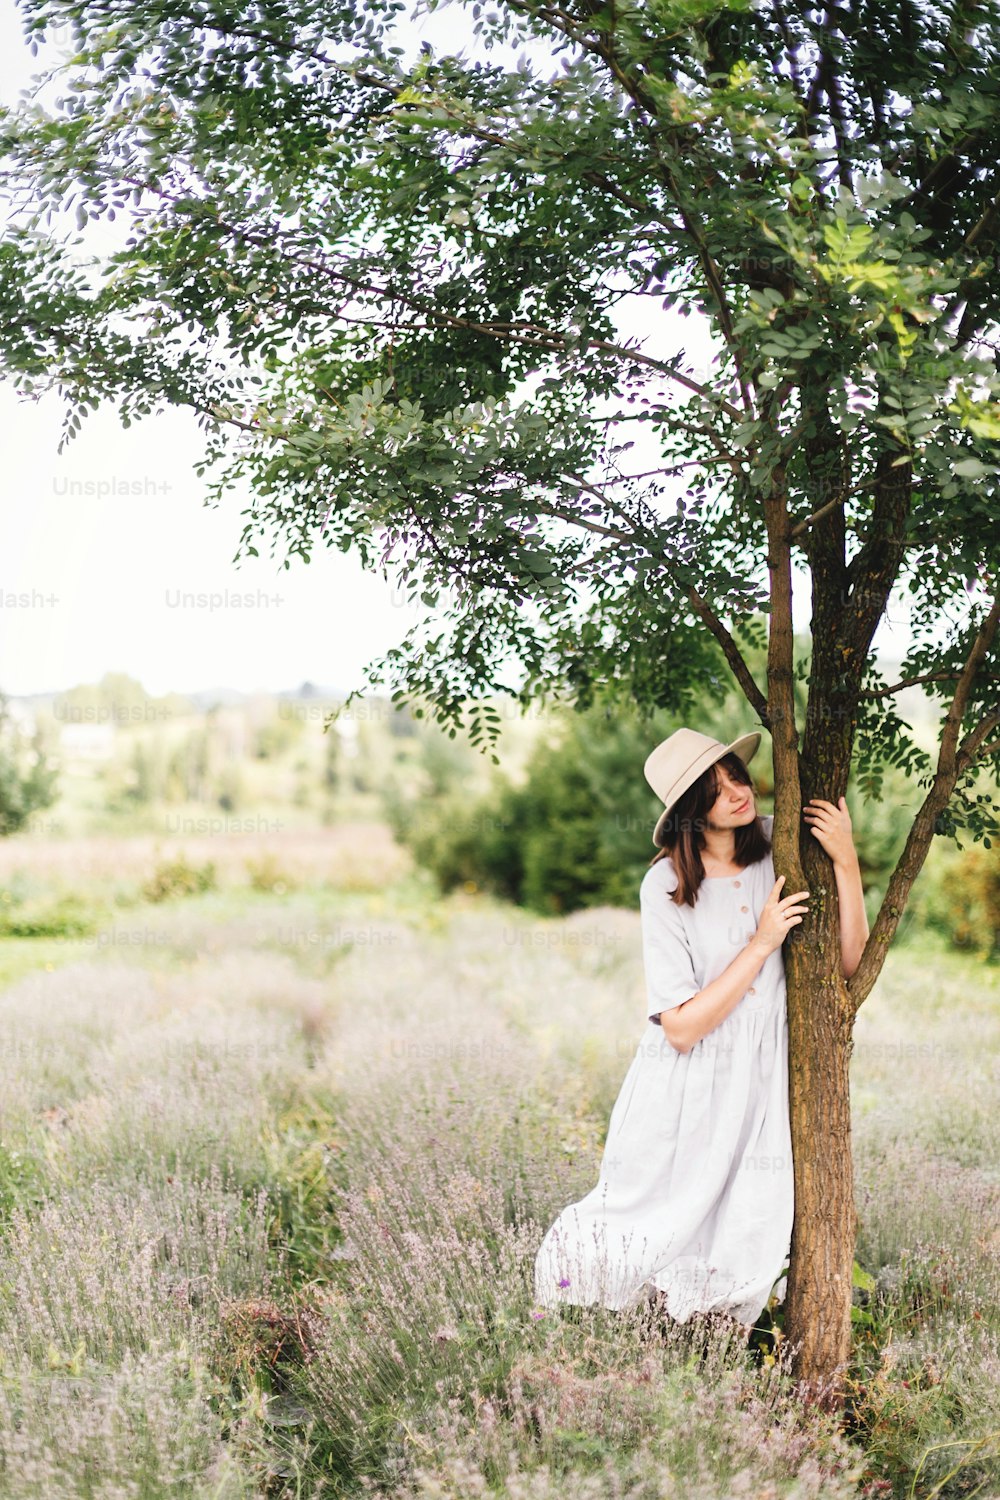 린넨 드레스와 모자를 쓴 세련된 힙스터 소녀는 나무 근처의 라벤더 밭에서 휴식을 취하고 있습니다. 산에서 여름 휴가를 즐기는 행복한 보헤미안 여자. 분위기 있는 차분한 시골의 순간. 텍스트를 위한 공간